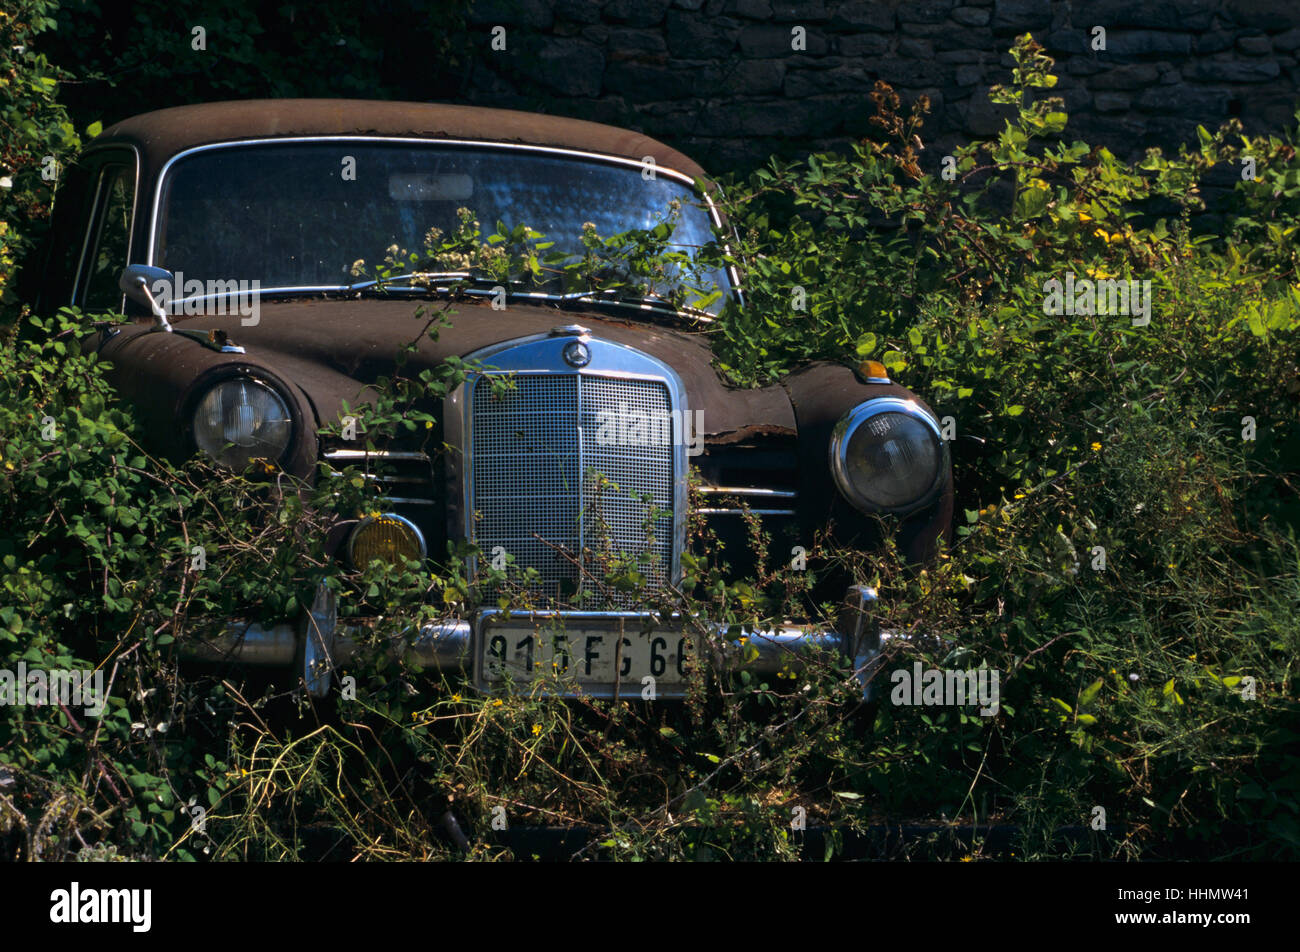 Old car amongst bushes Stock Photo